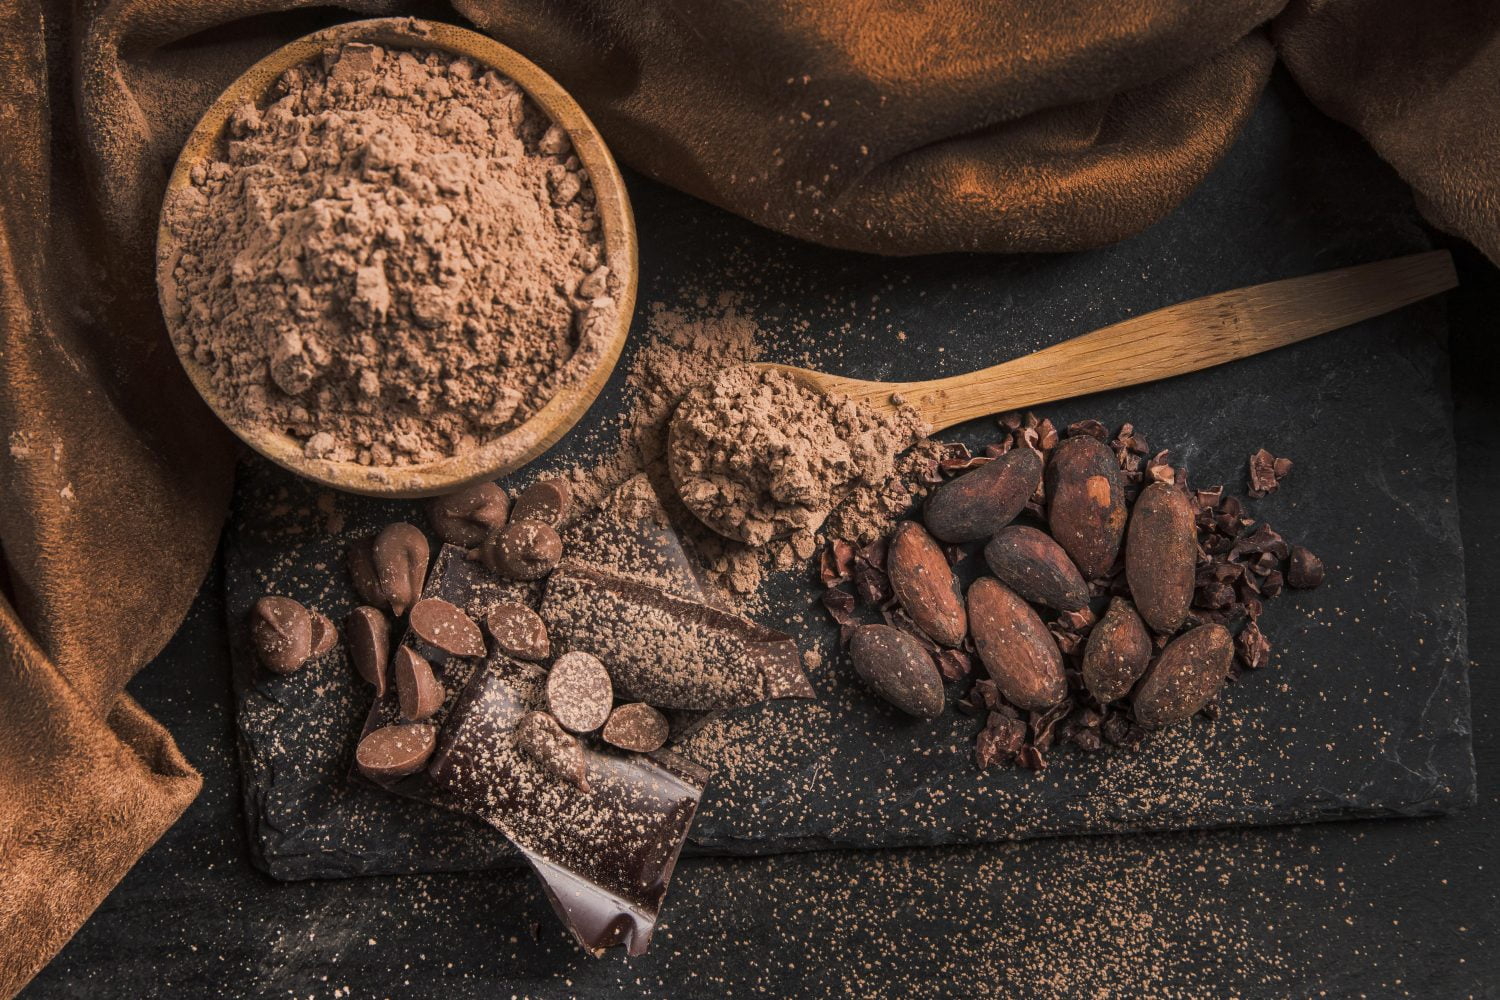 beneficios del cacao